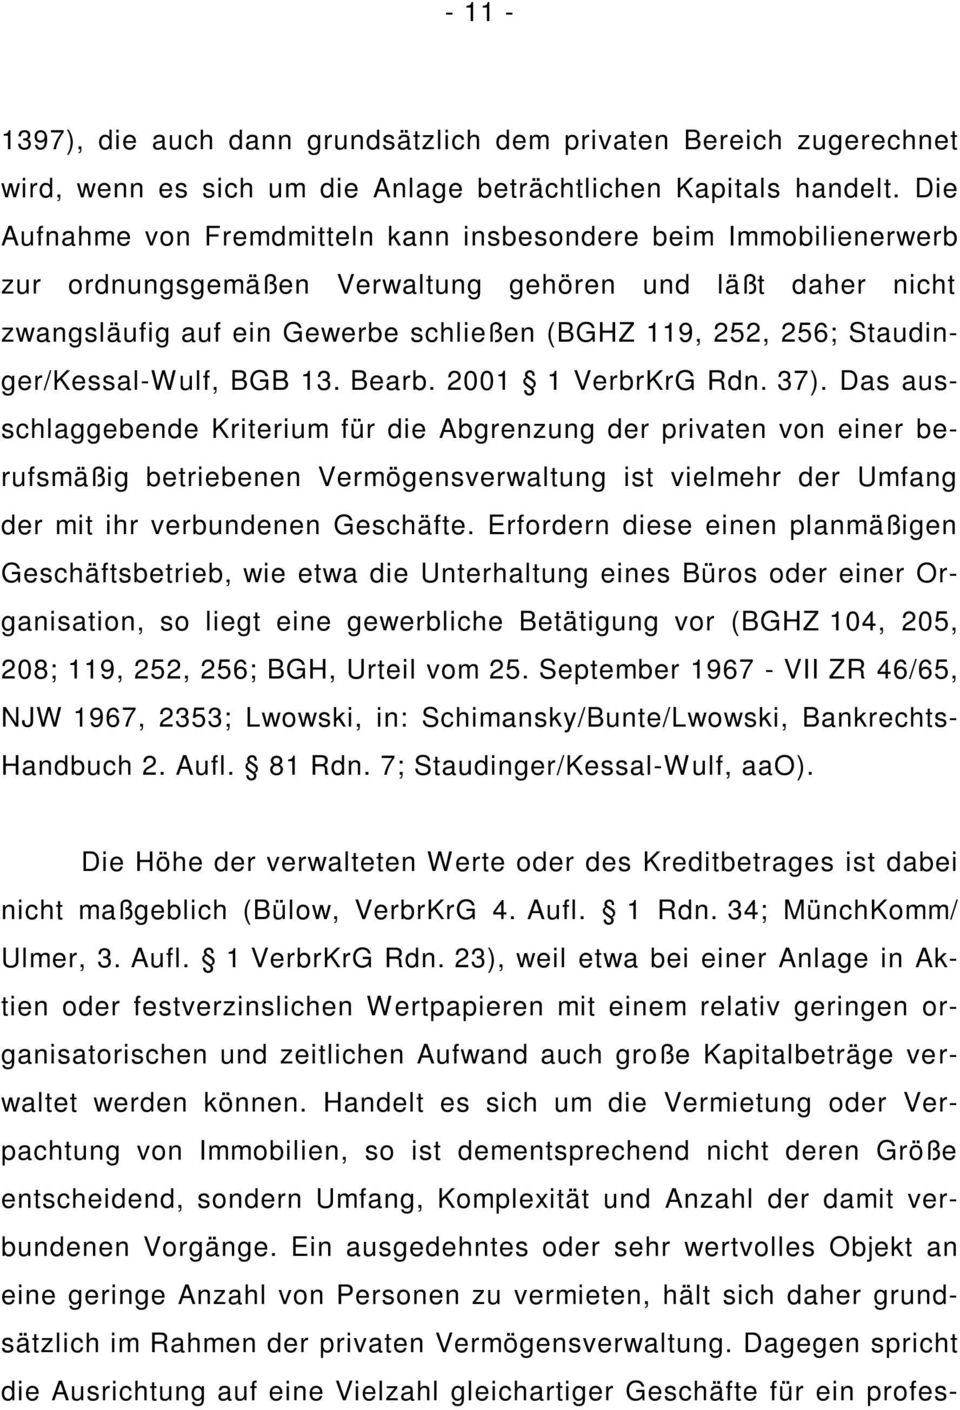 Staudinger/Kessal-Wulf, BGB 13. Bearb. 2001 1 VerbrKrG Rdn. 37).